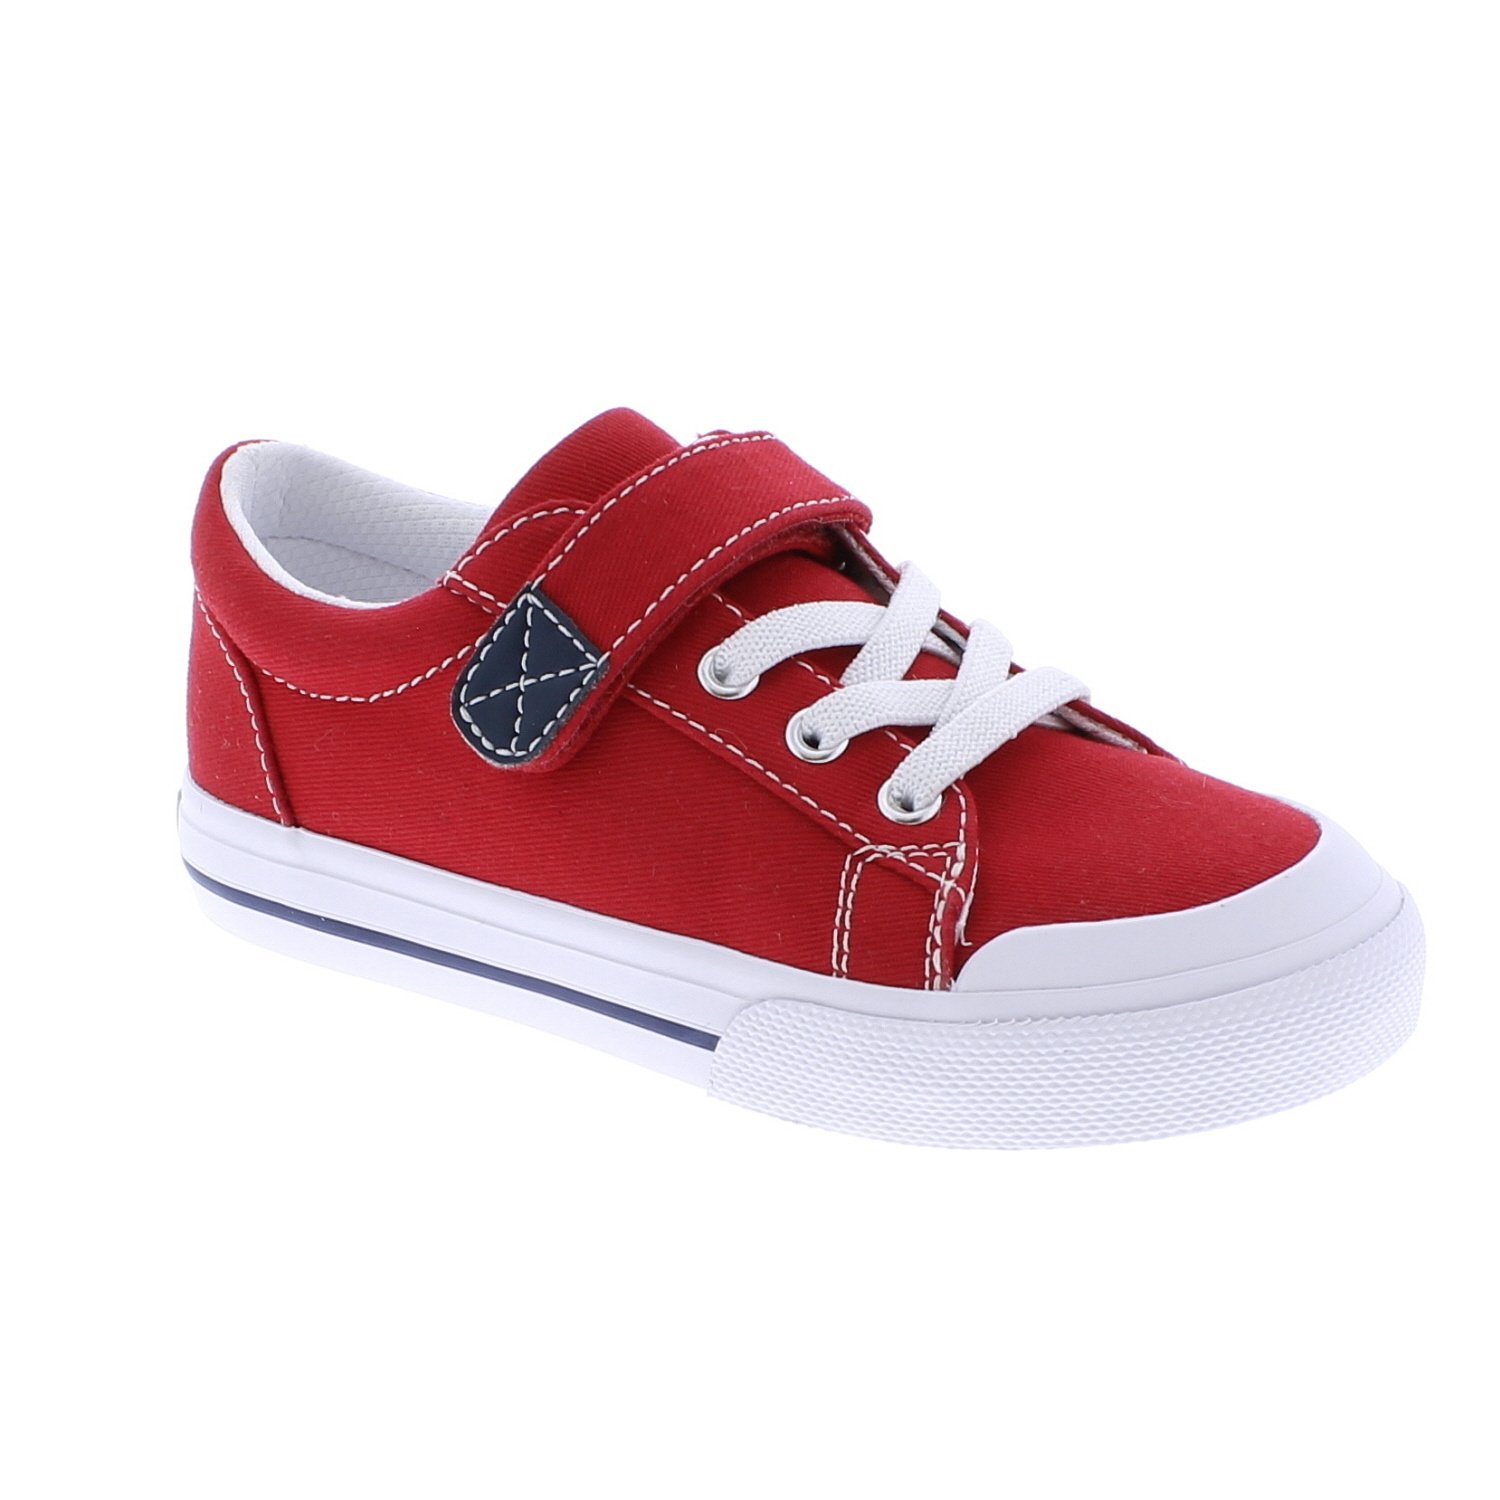 Footmates Red Jordan Shoe